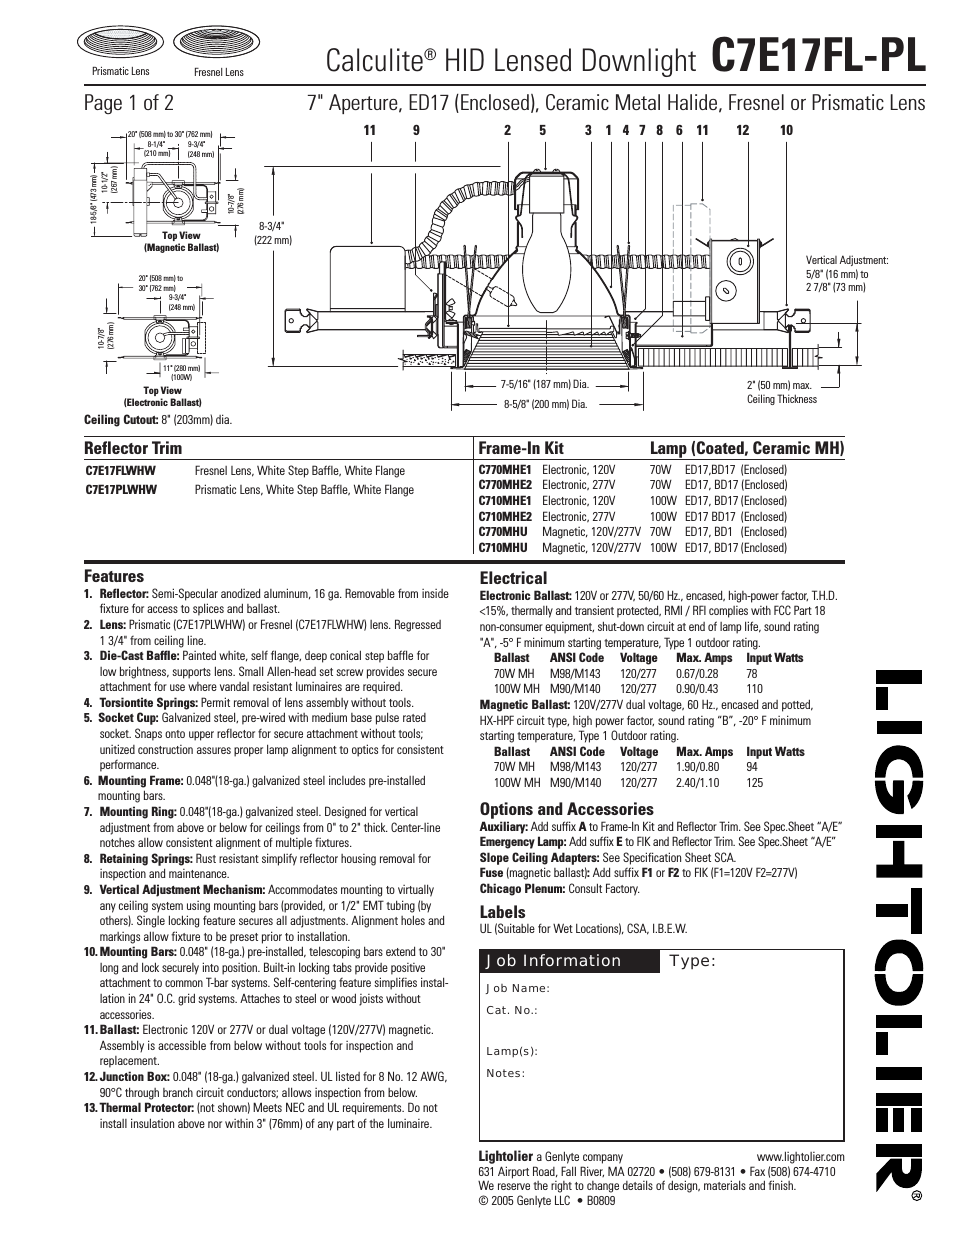 Calculite HID Lensed Downlight C7E17FL-PL